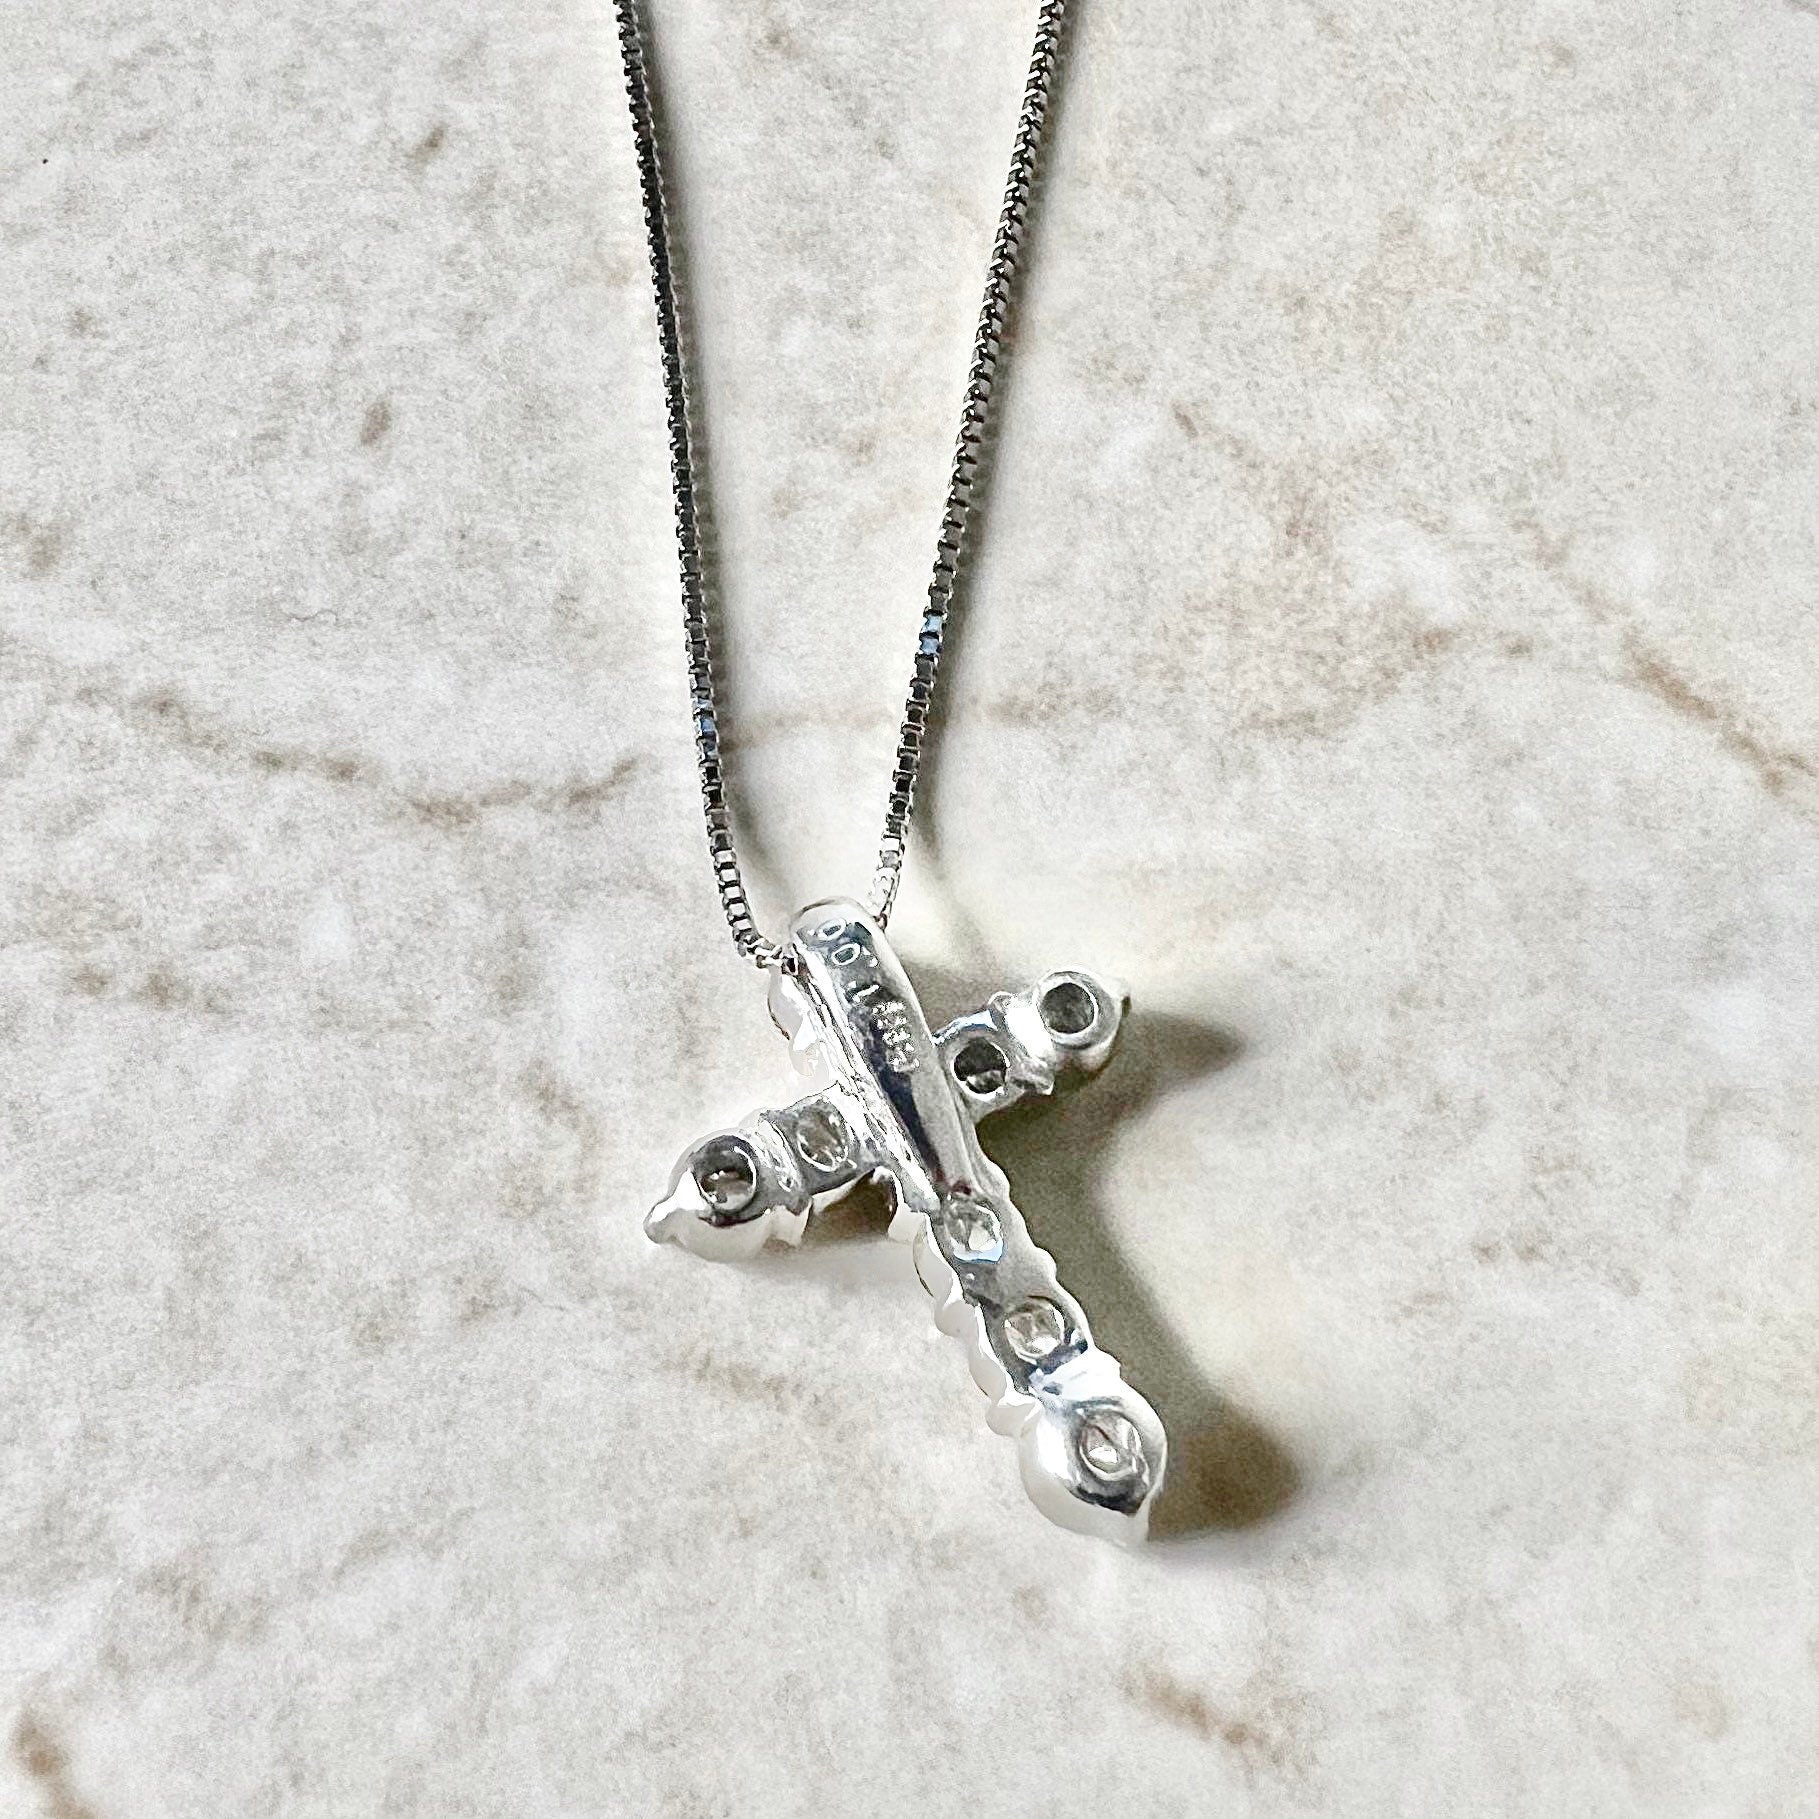 Cross Necklace - Men's 925 Sterling Silver Fleur-De-Lis Cross Pendant